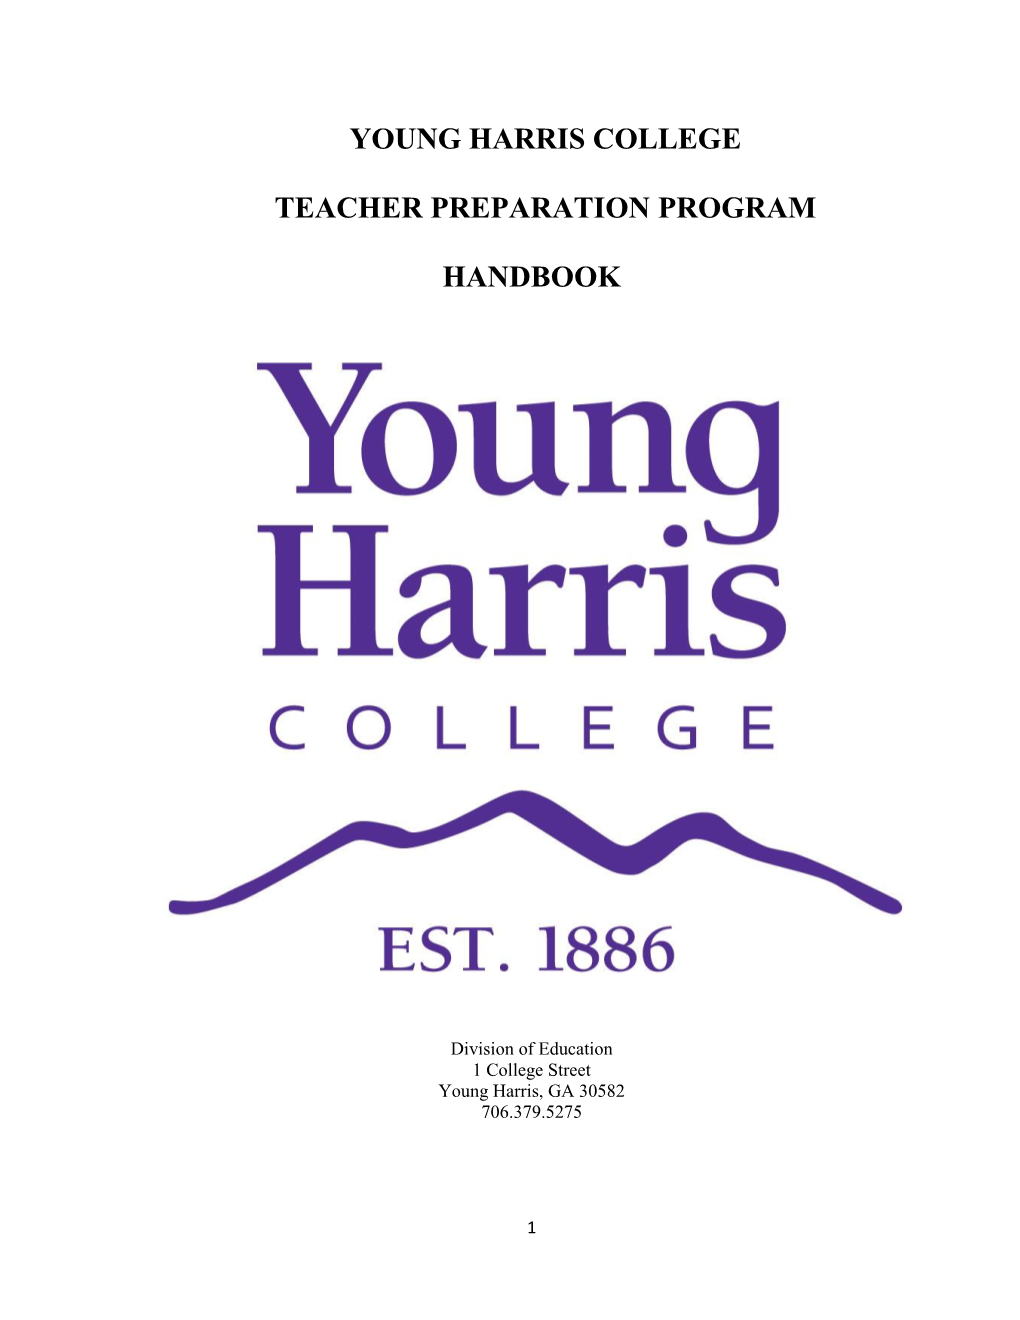 Teacher Preparation Program Handbook As a Guide for Matriculation Through His/Her Program of Study